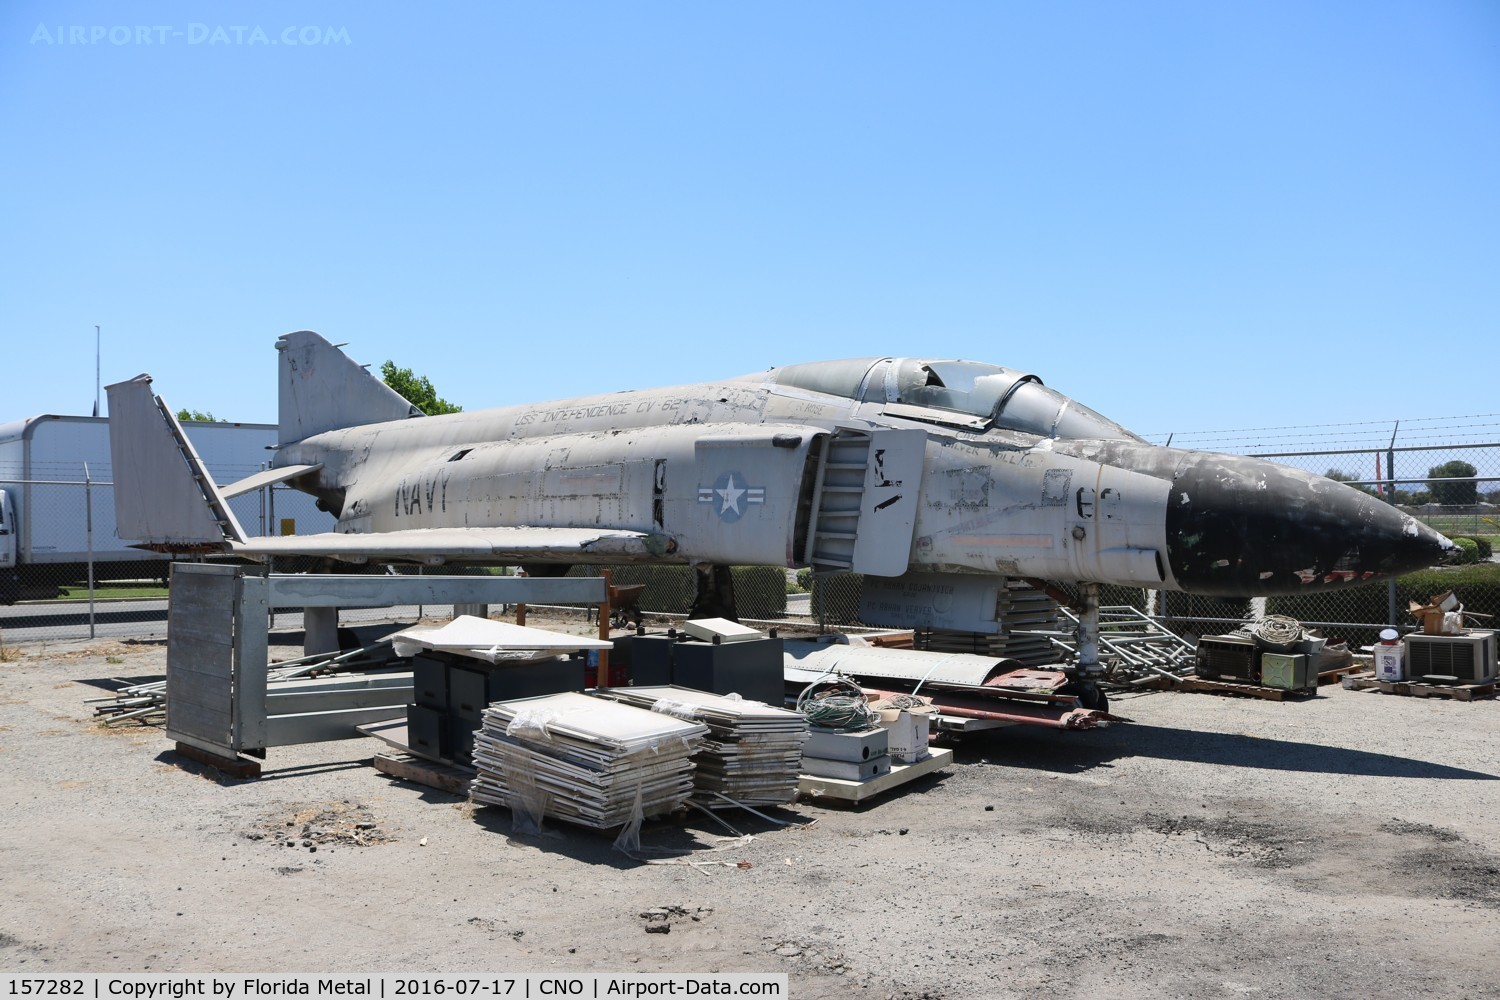 157282, McDonnell F-4J Phantom II C/N 3816, F-4J Phantom II used as a movie prop at one time